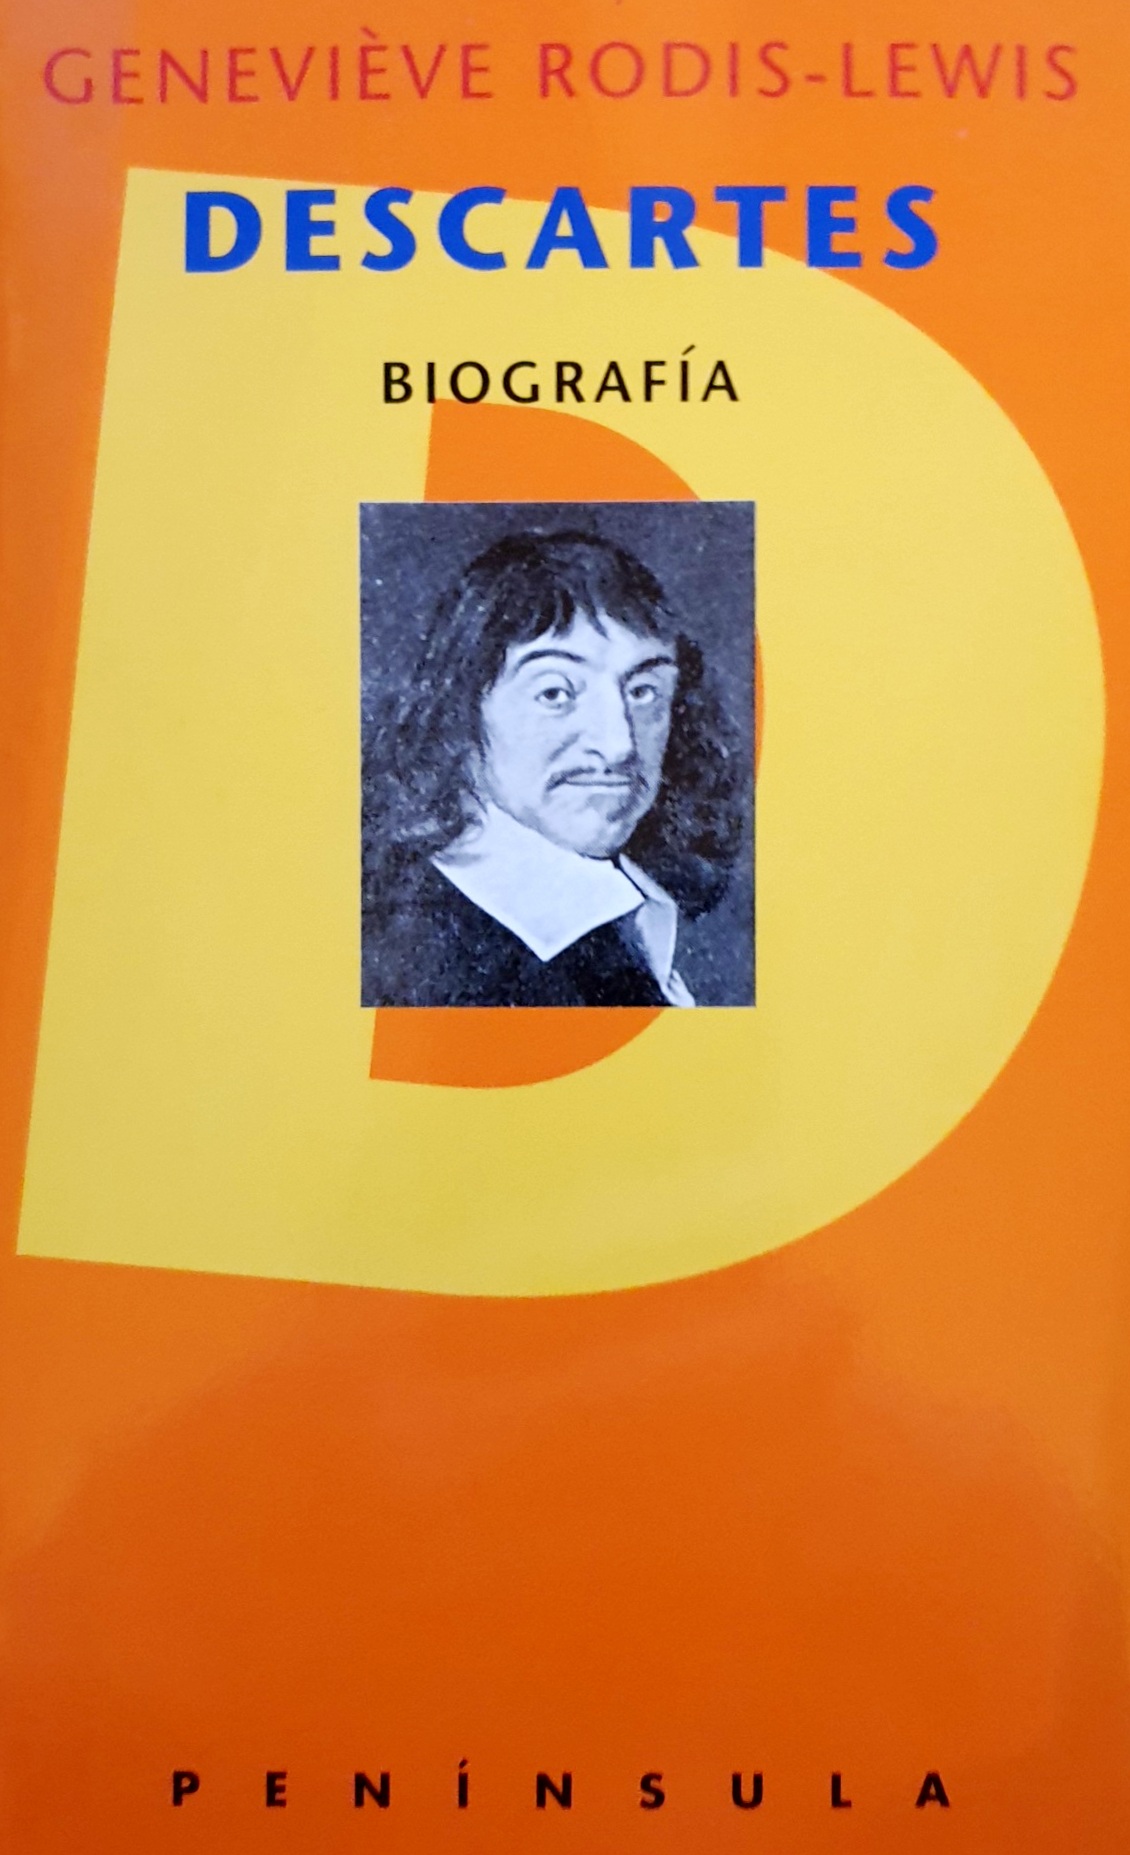 Imagen de portada del libro Descartes